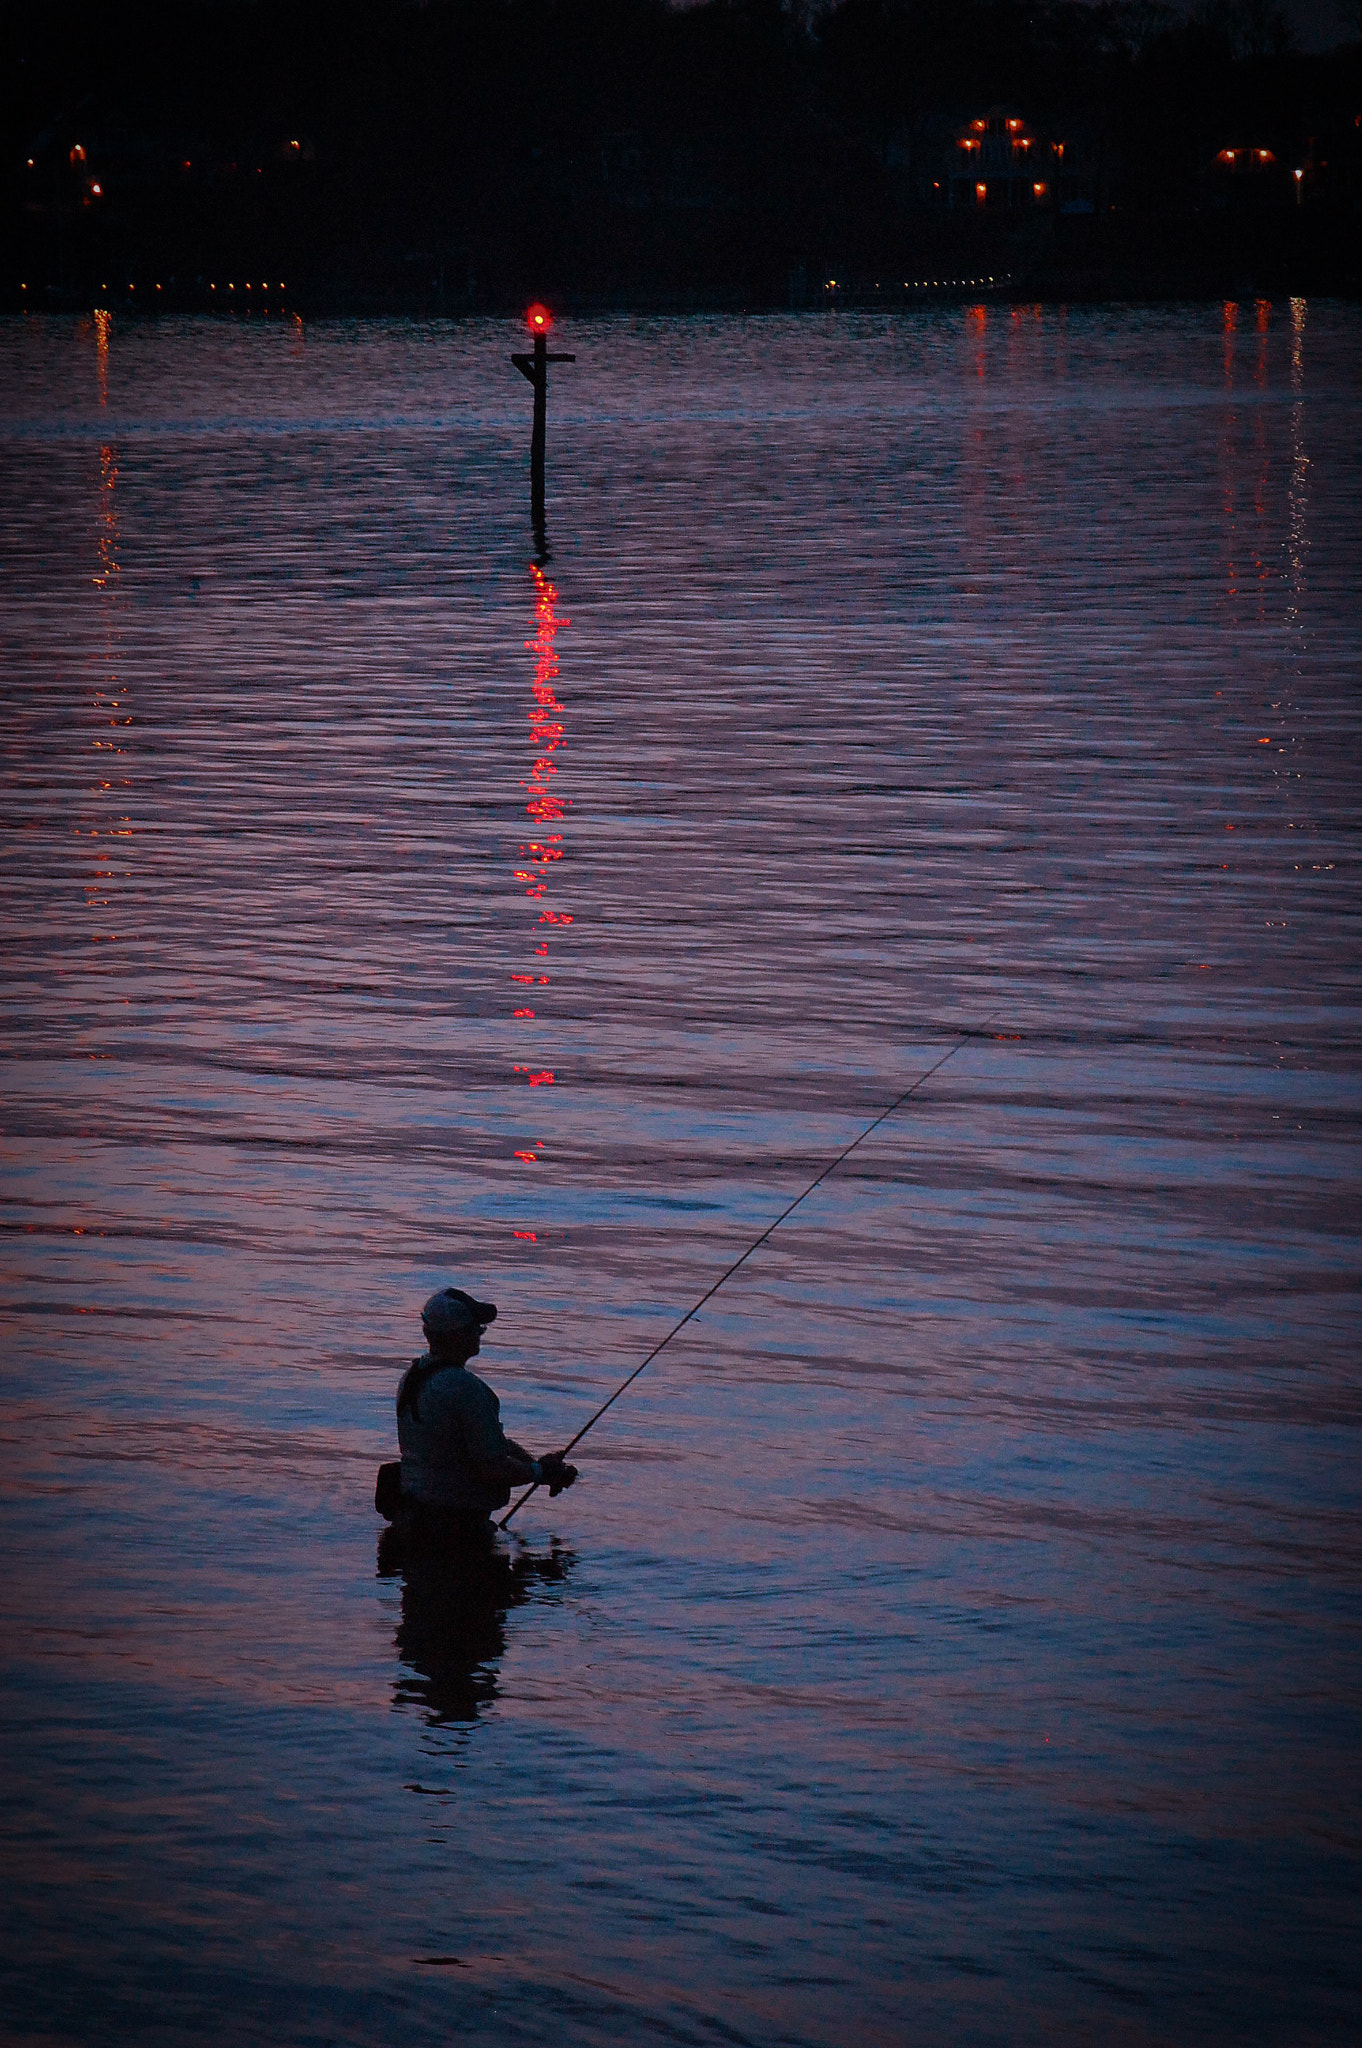 Nikon D40 + Nikon AF-S DX Nikkor 55-200mm F4-5.6G VR sample photo. Fishing at sunset,manasquan river photography